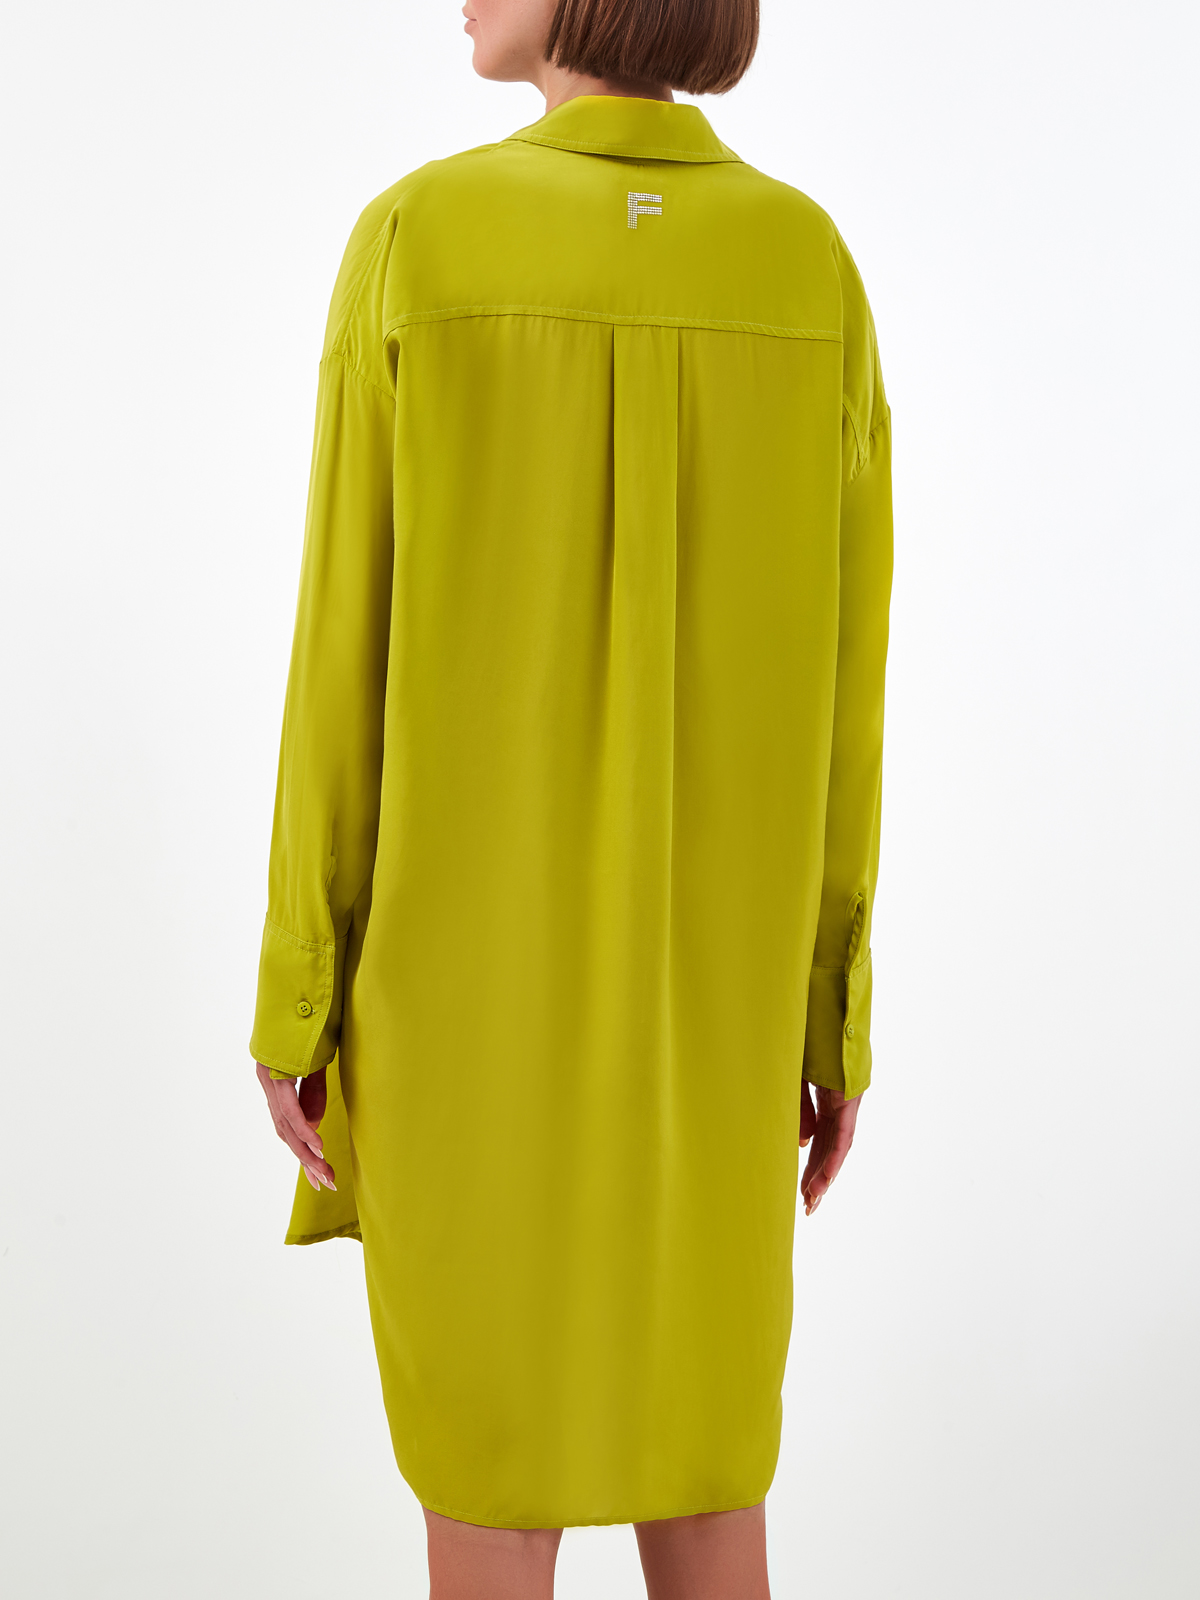 Свободное платье-рубашка с логотипом из стразов FISICO, цвет зеленый, размер S;L;M - фото 4